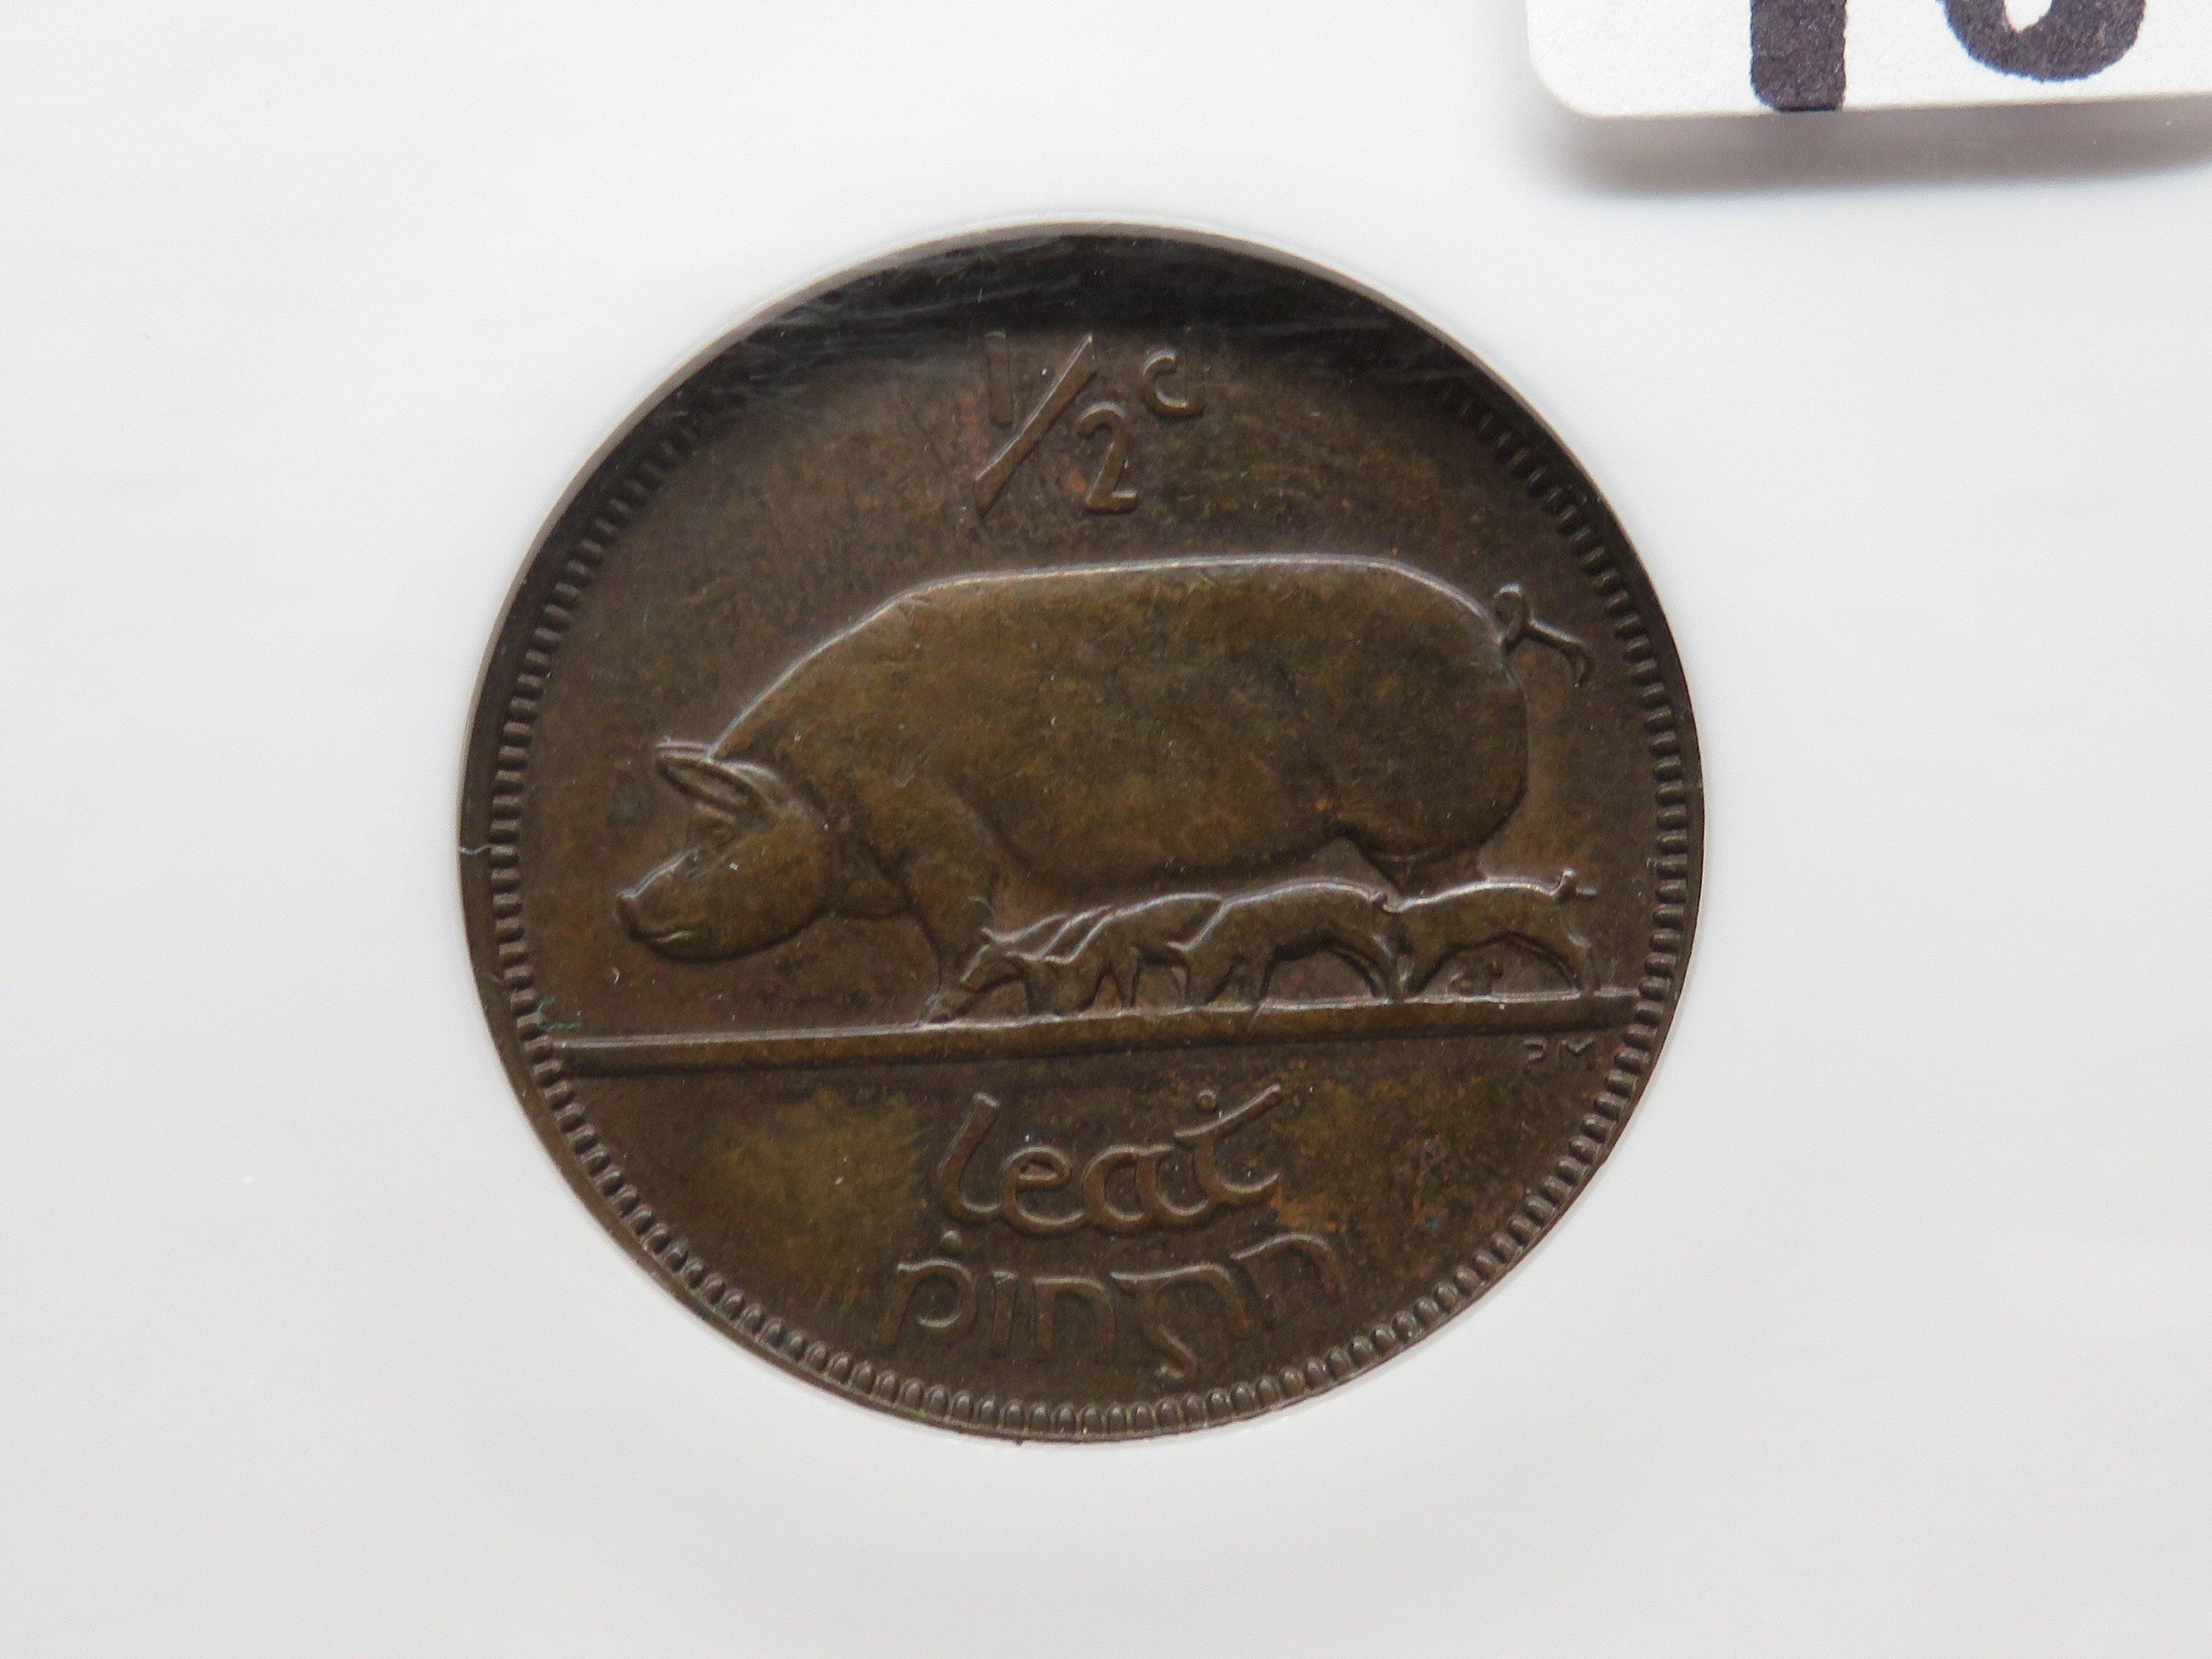 Ireland 1/2 Penny 1935 NGC AU55 BN